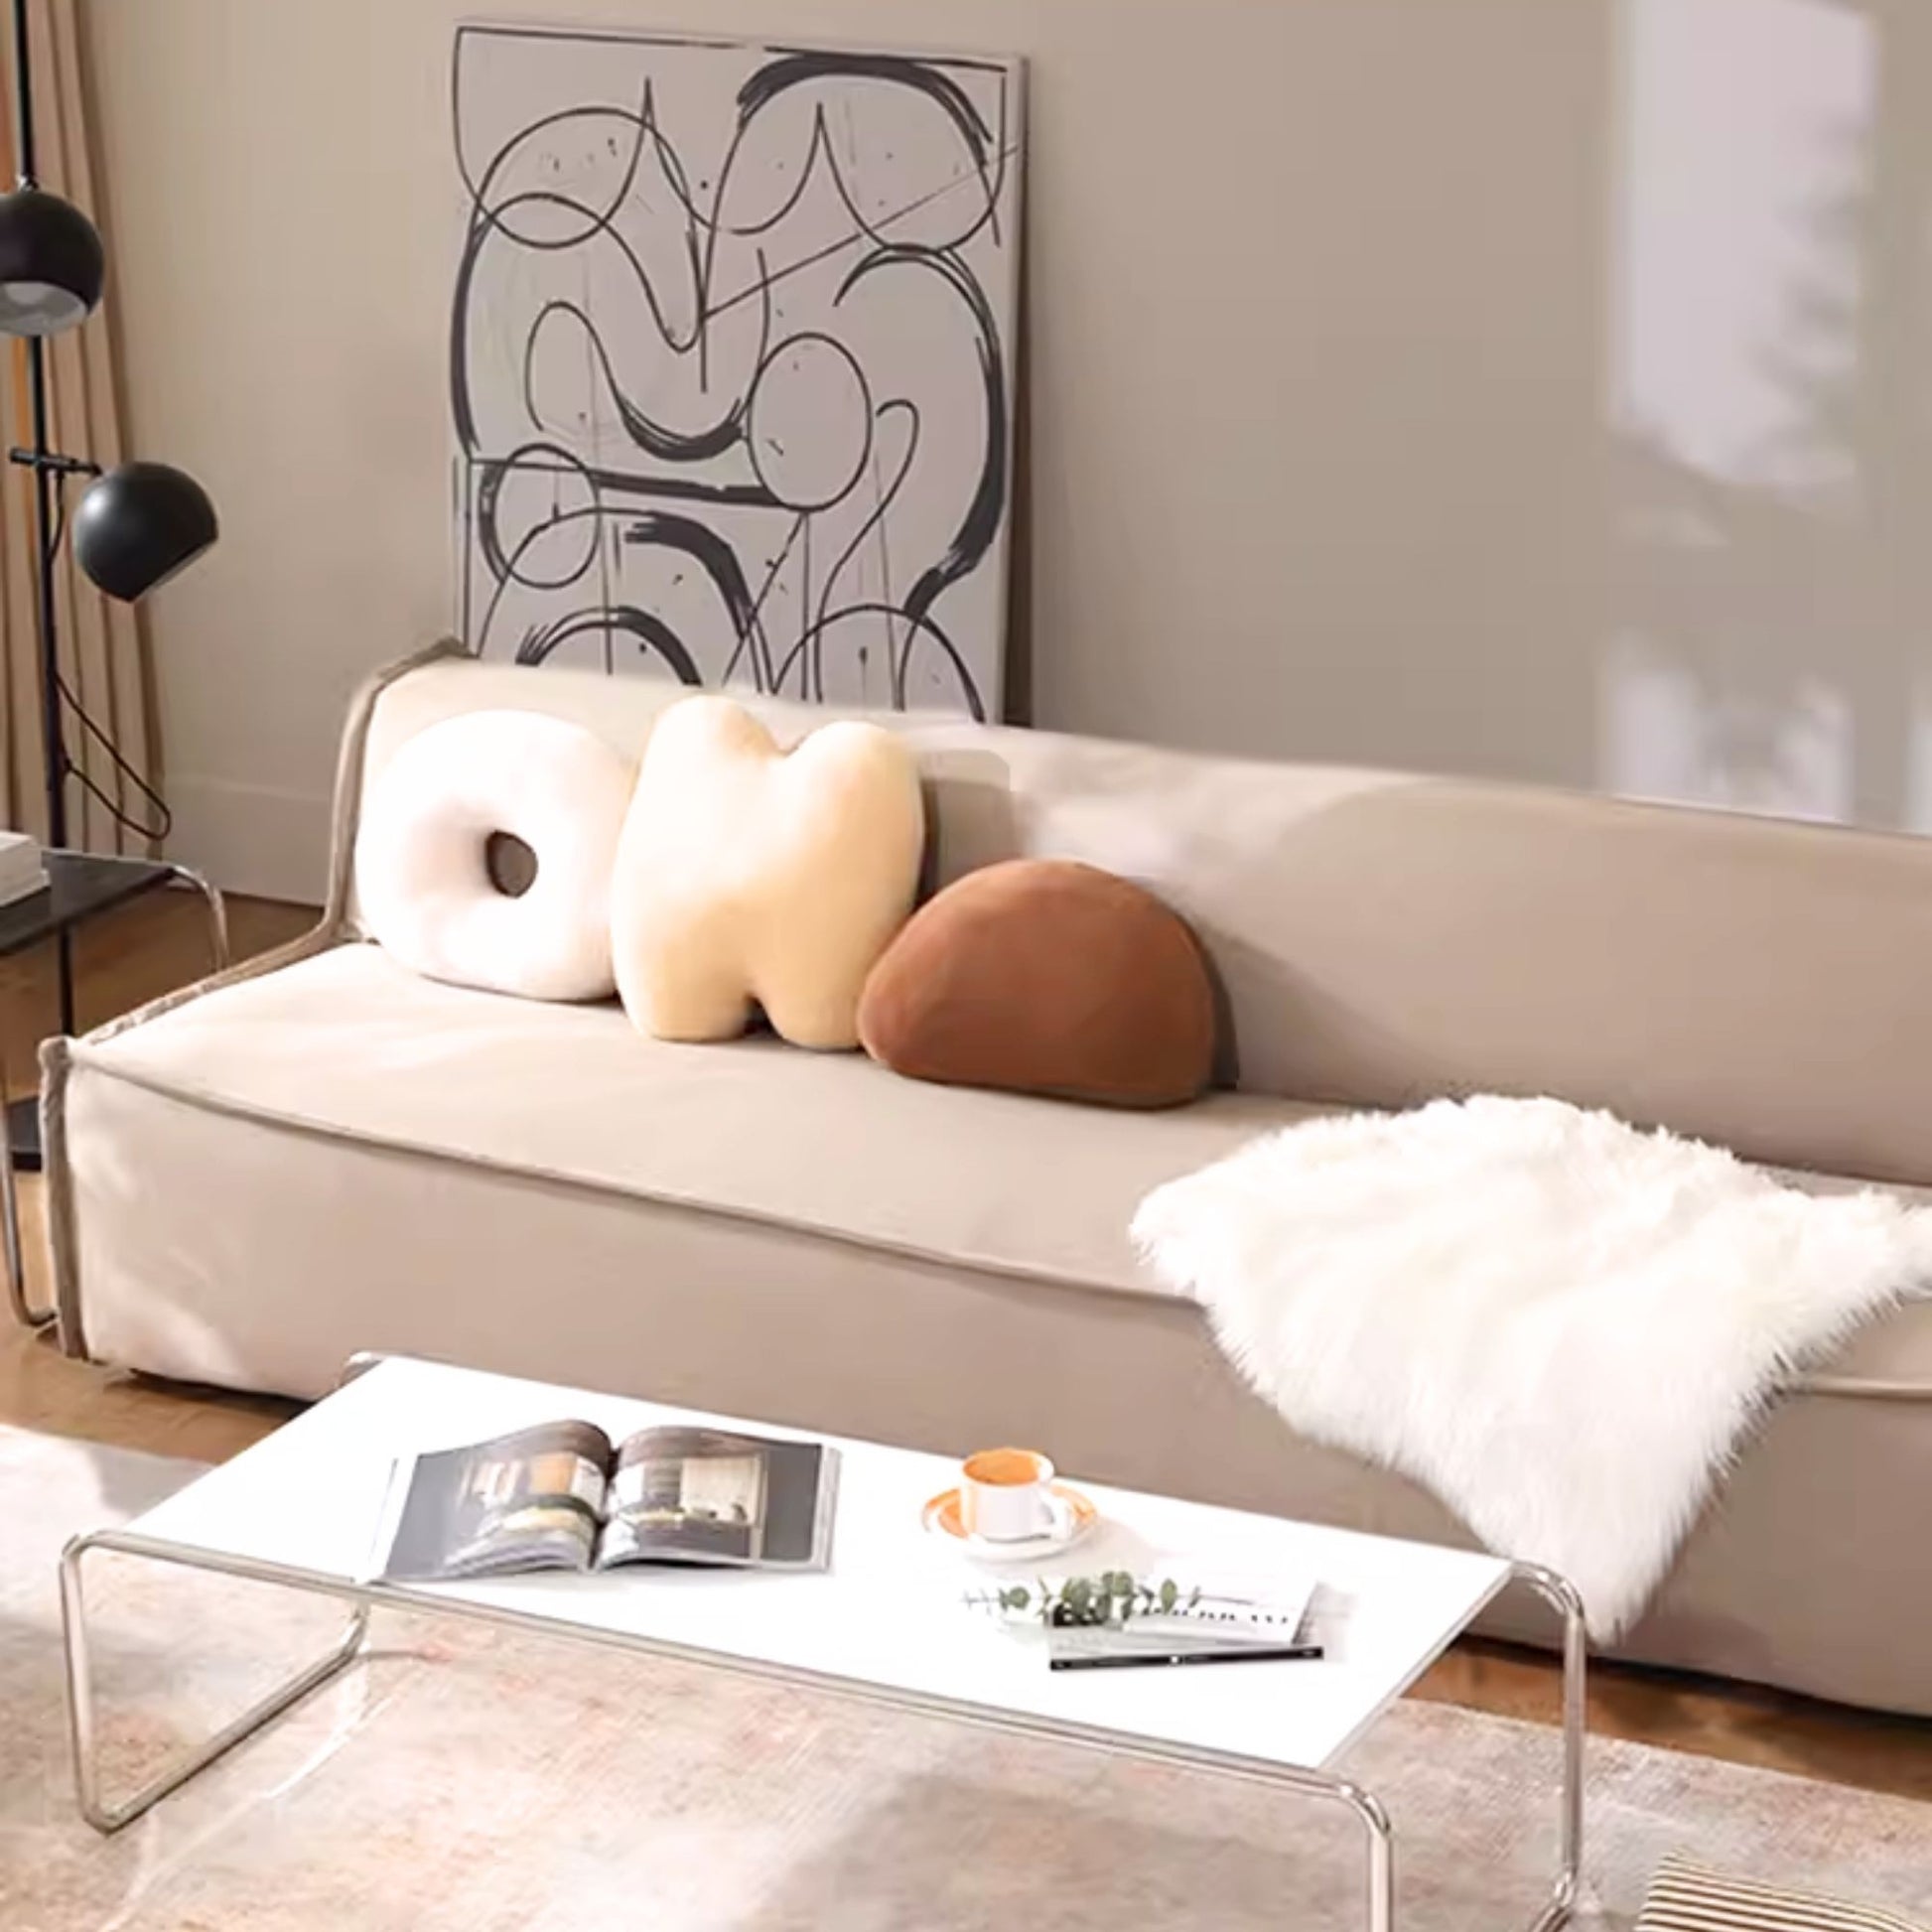 Cubo fabric sofa brown